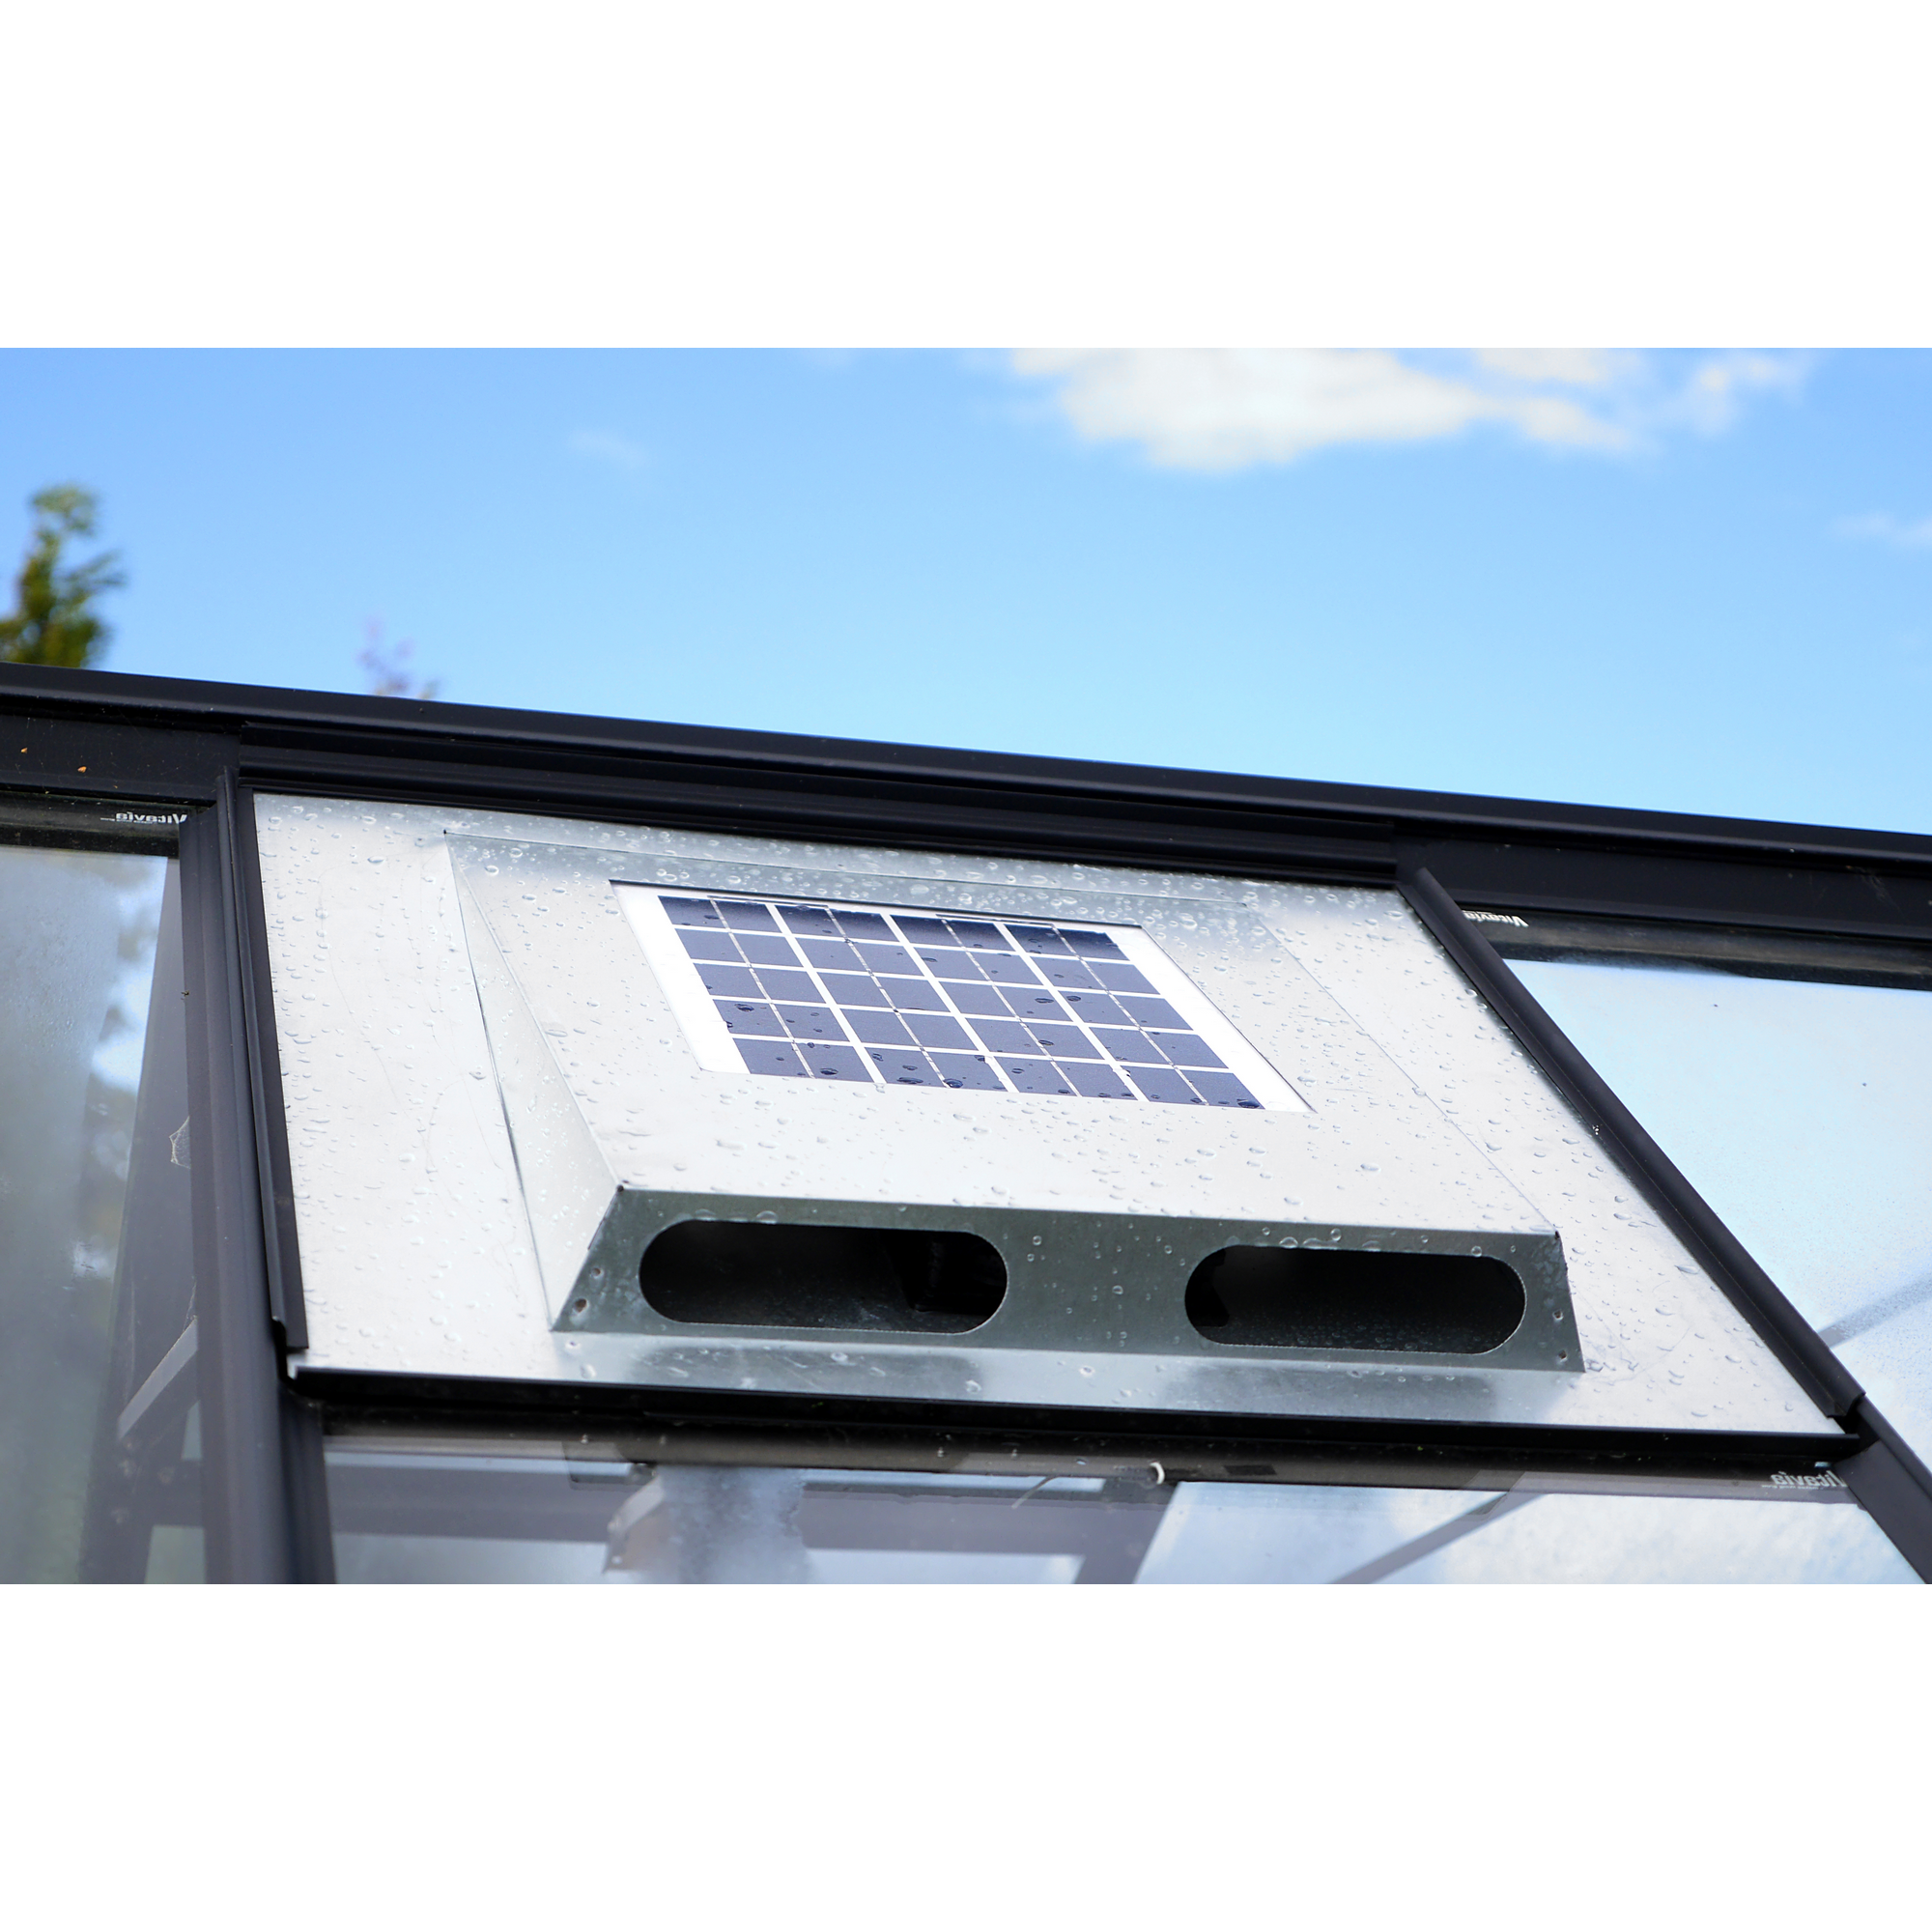 Solar-Dachventilator für Gewächshäuser 61 x 55,9 x 5,5 cm + product picture